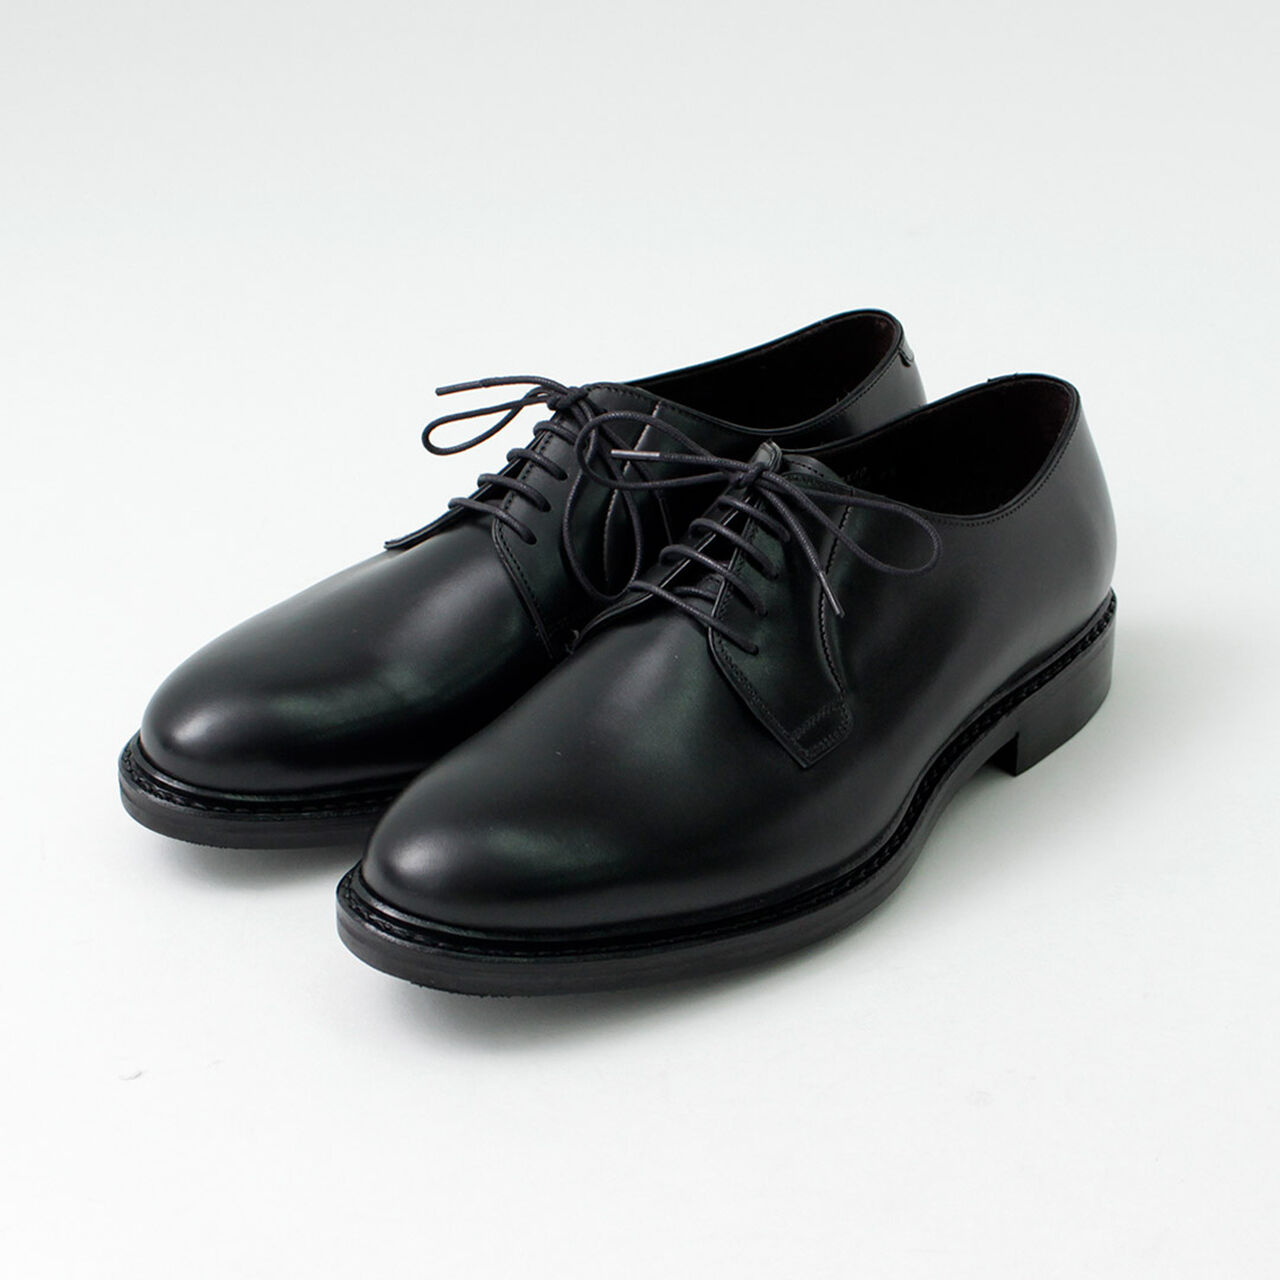 Tokio Plain Toe Leather Shoes,Black, large image number 0